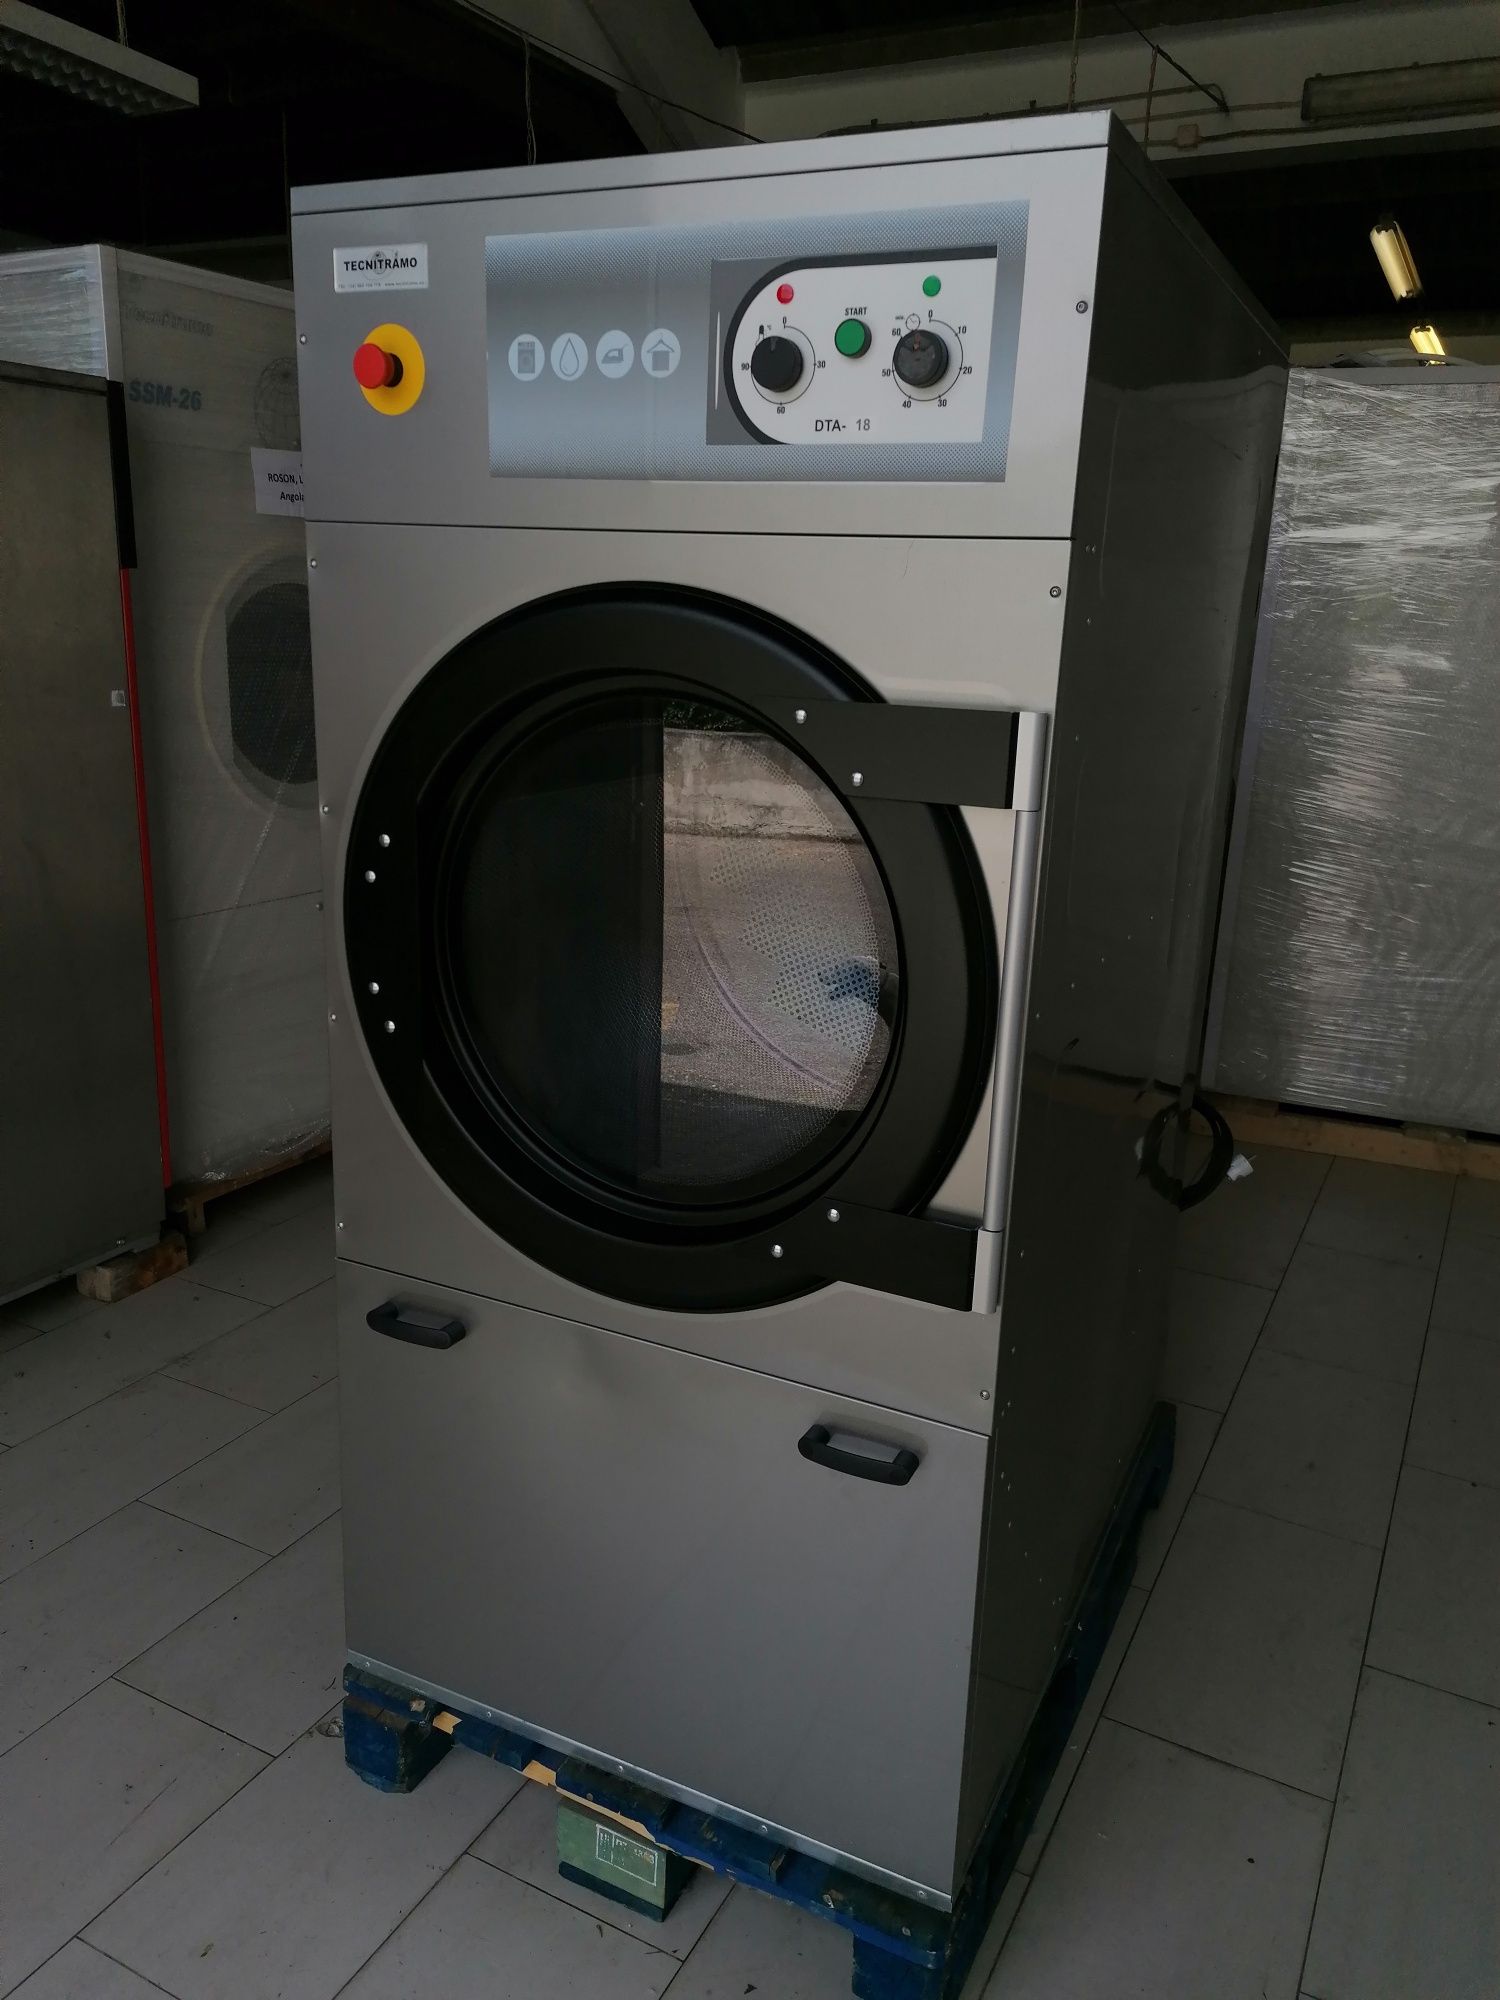 Secador de roupa industrial / máquina de secar Self service low cost